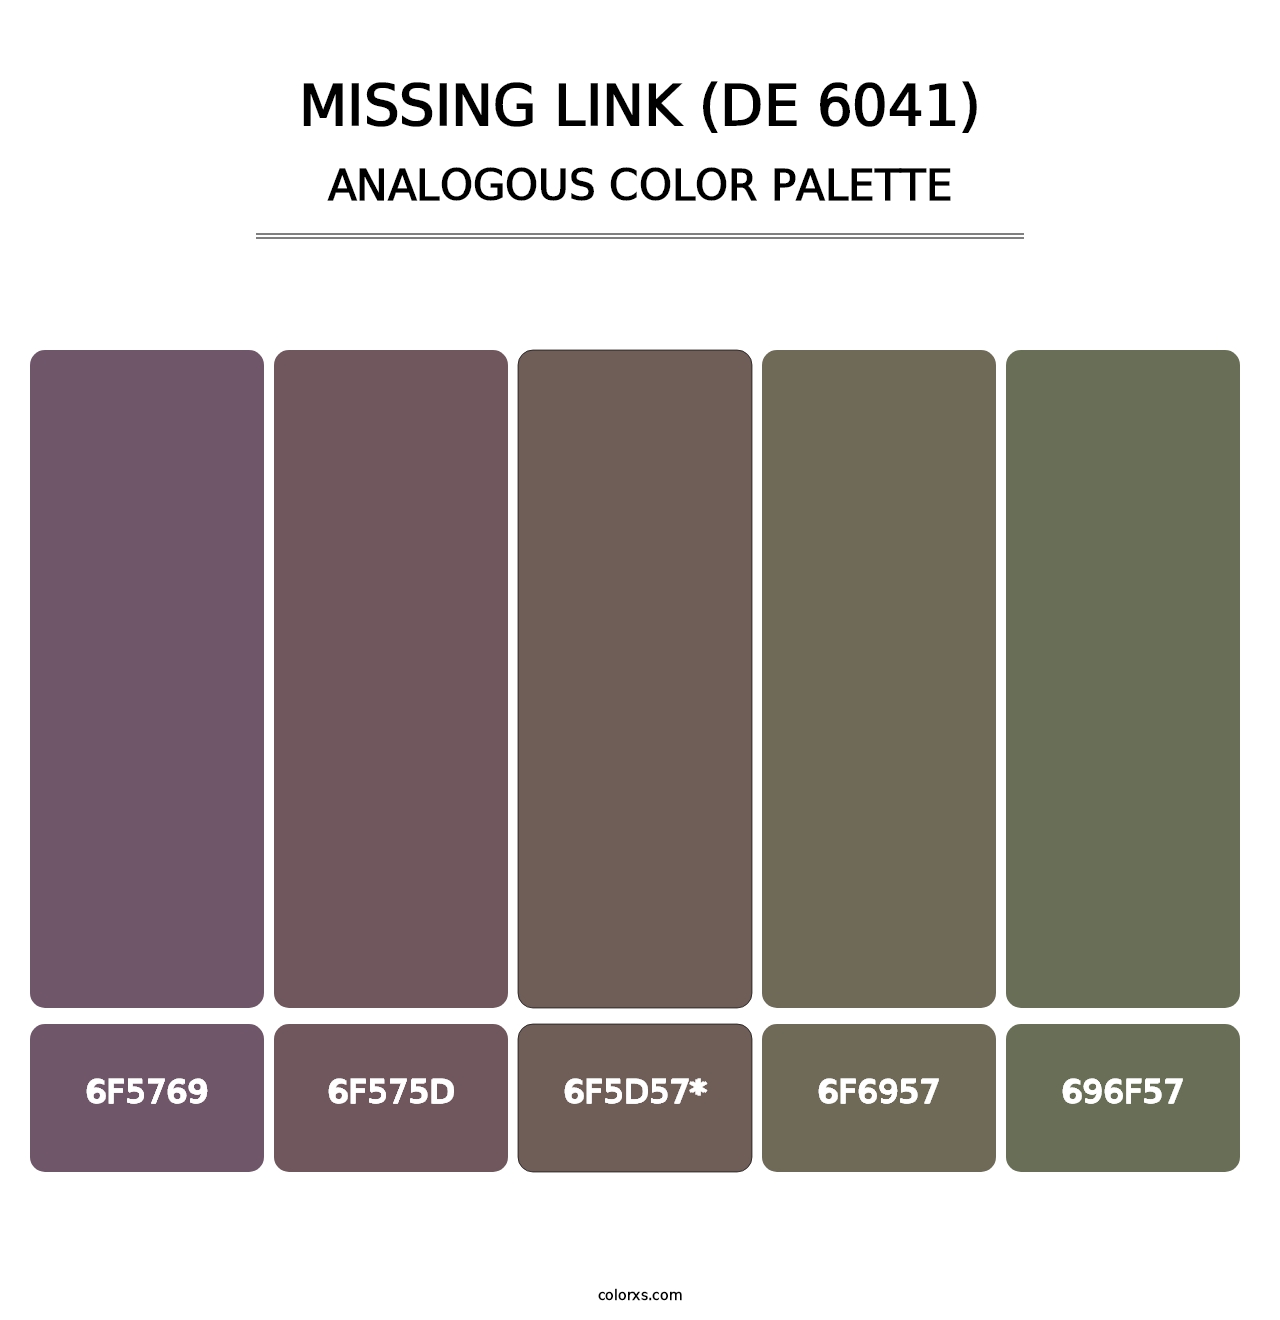 Missing Link (DE 6041) - Analogous Color Palette